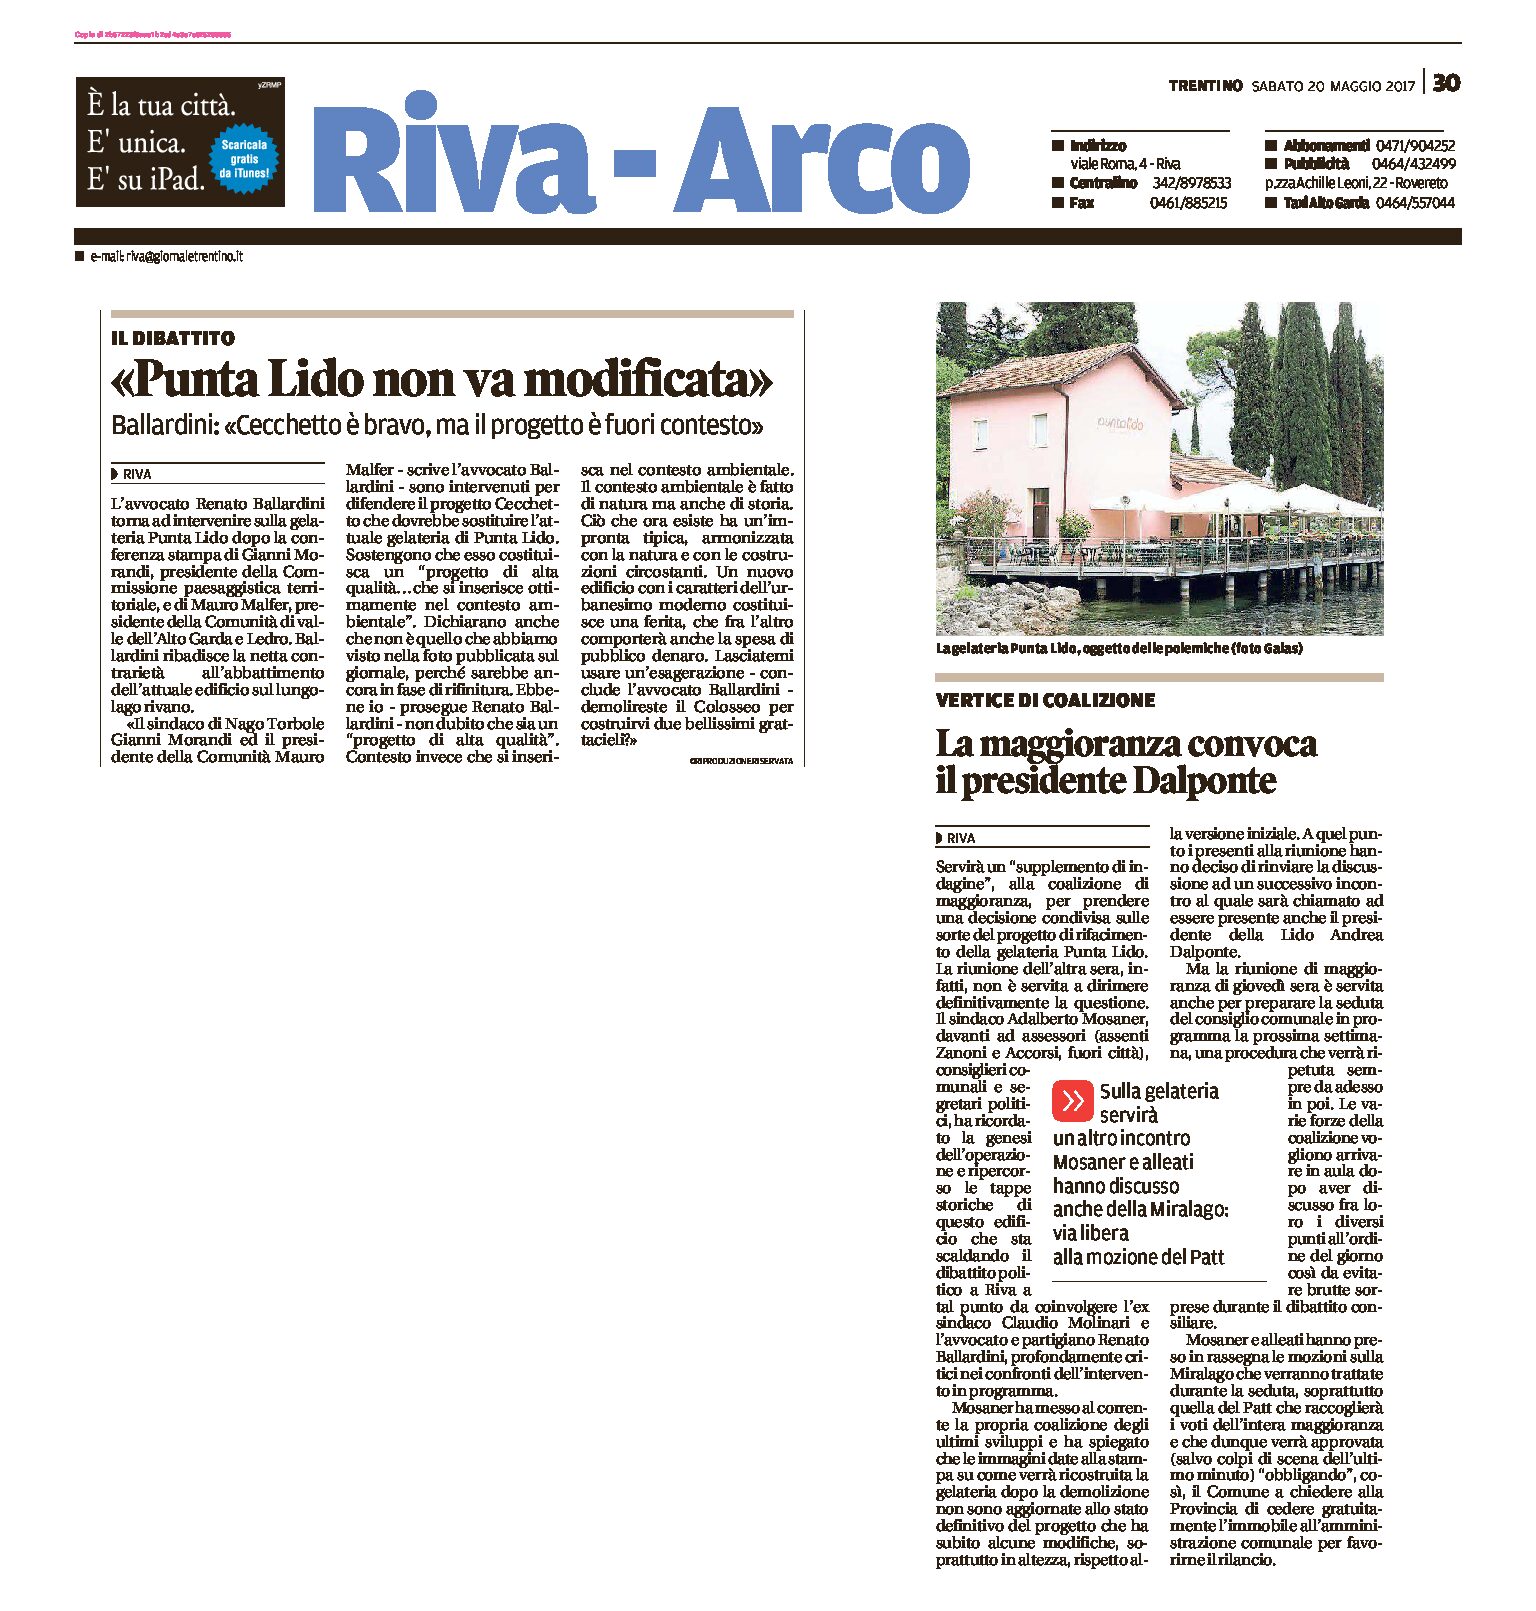 Riva: Interviene ancora Ballardini “Punta Lido non va modificata”. La Maggioranza convoca Dalponte